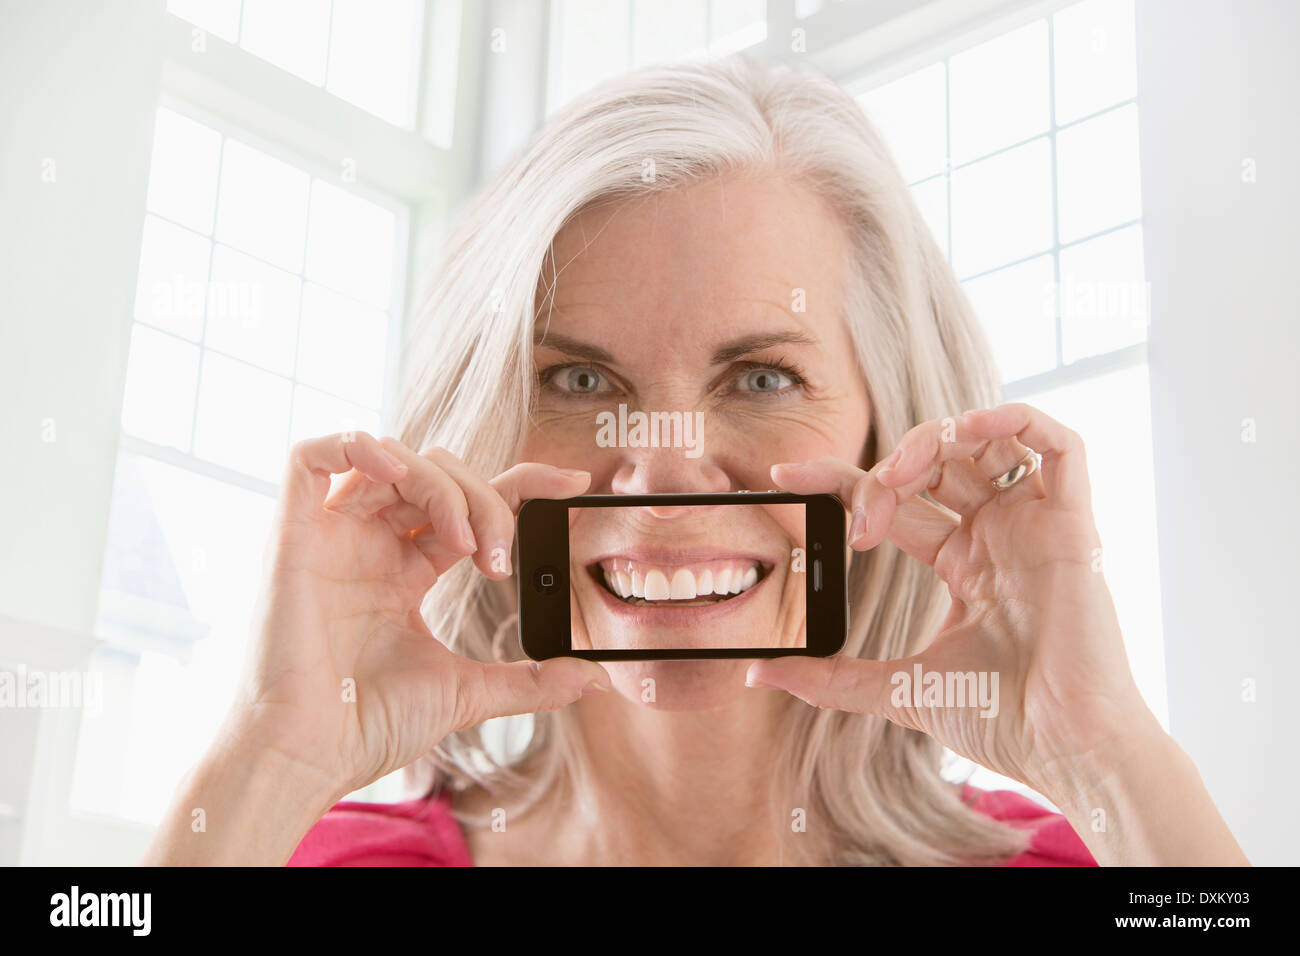 Caucasian woman holding cell phone avec l'image du sourire Banque D'Images